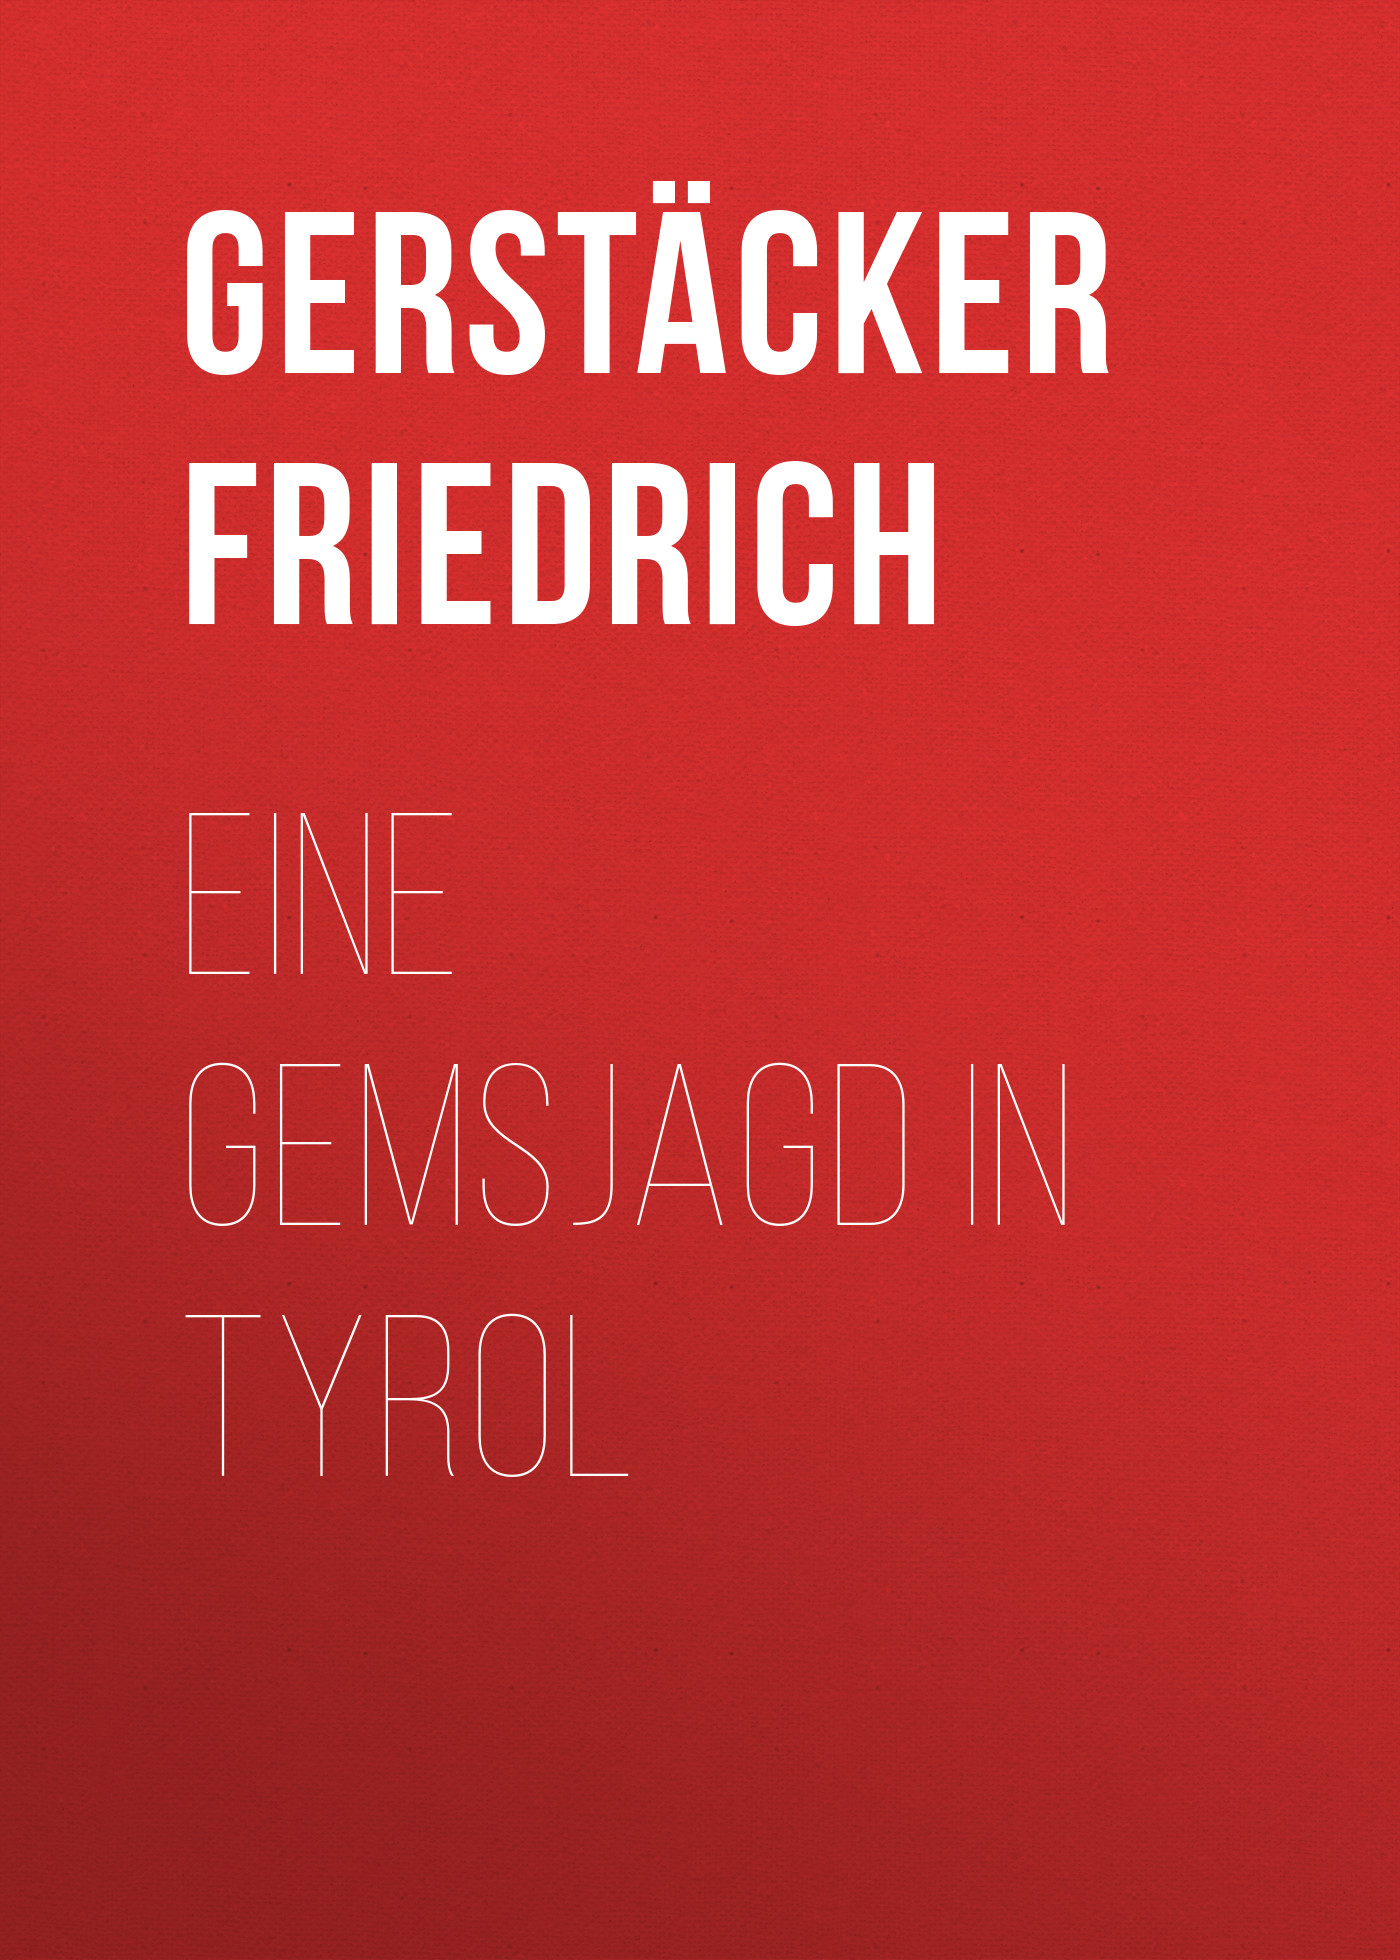 Книга Eine Gemsjagd in Tyrol из серии , созданная Friedrich Gerstäcker, может относится к жанру Зарубежная старинная литература, Зарубежная классика. Стоимость электронной книги Eine Gemsjagd in Tyrol с идентификатором 24937893 составляет 0 руб.